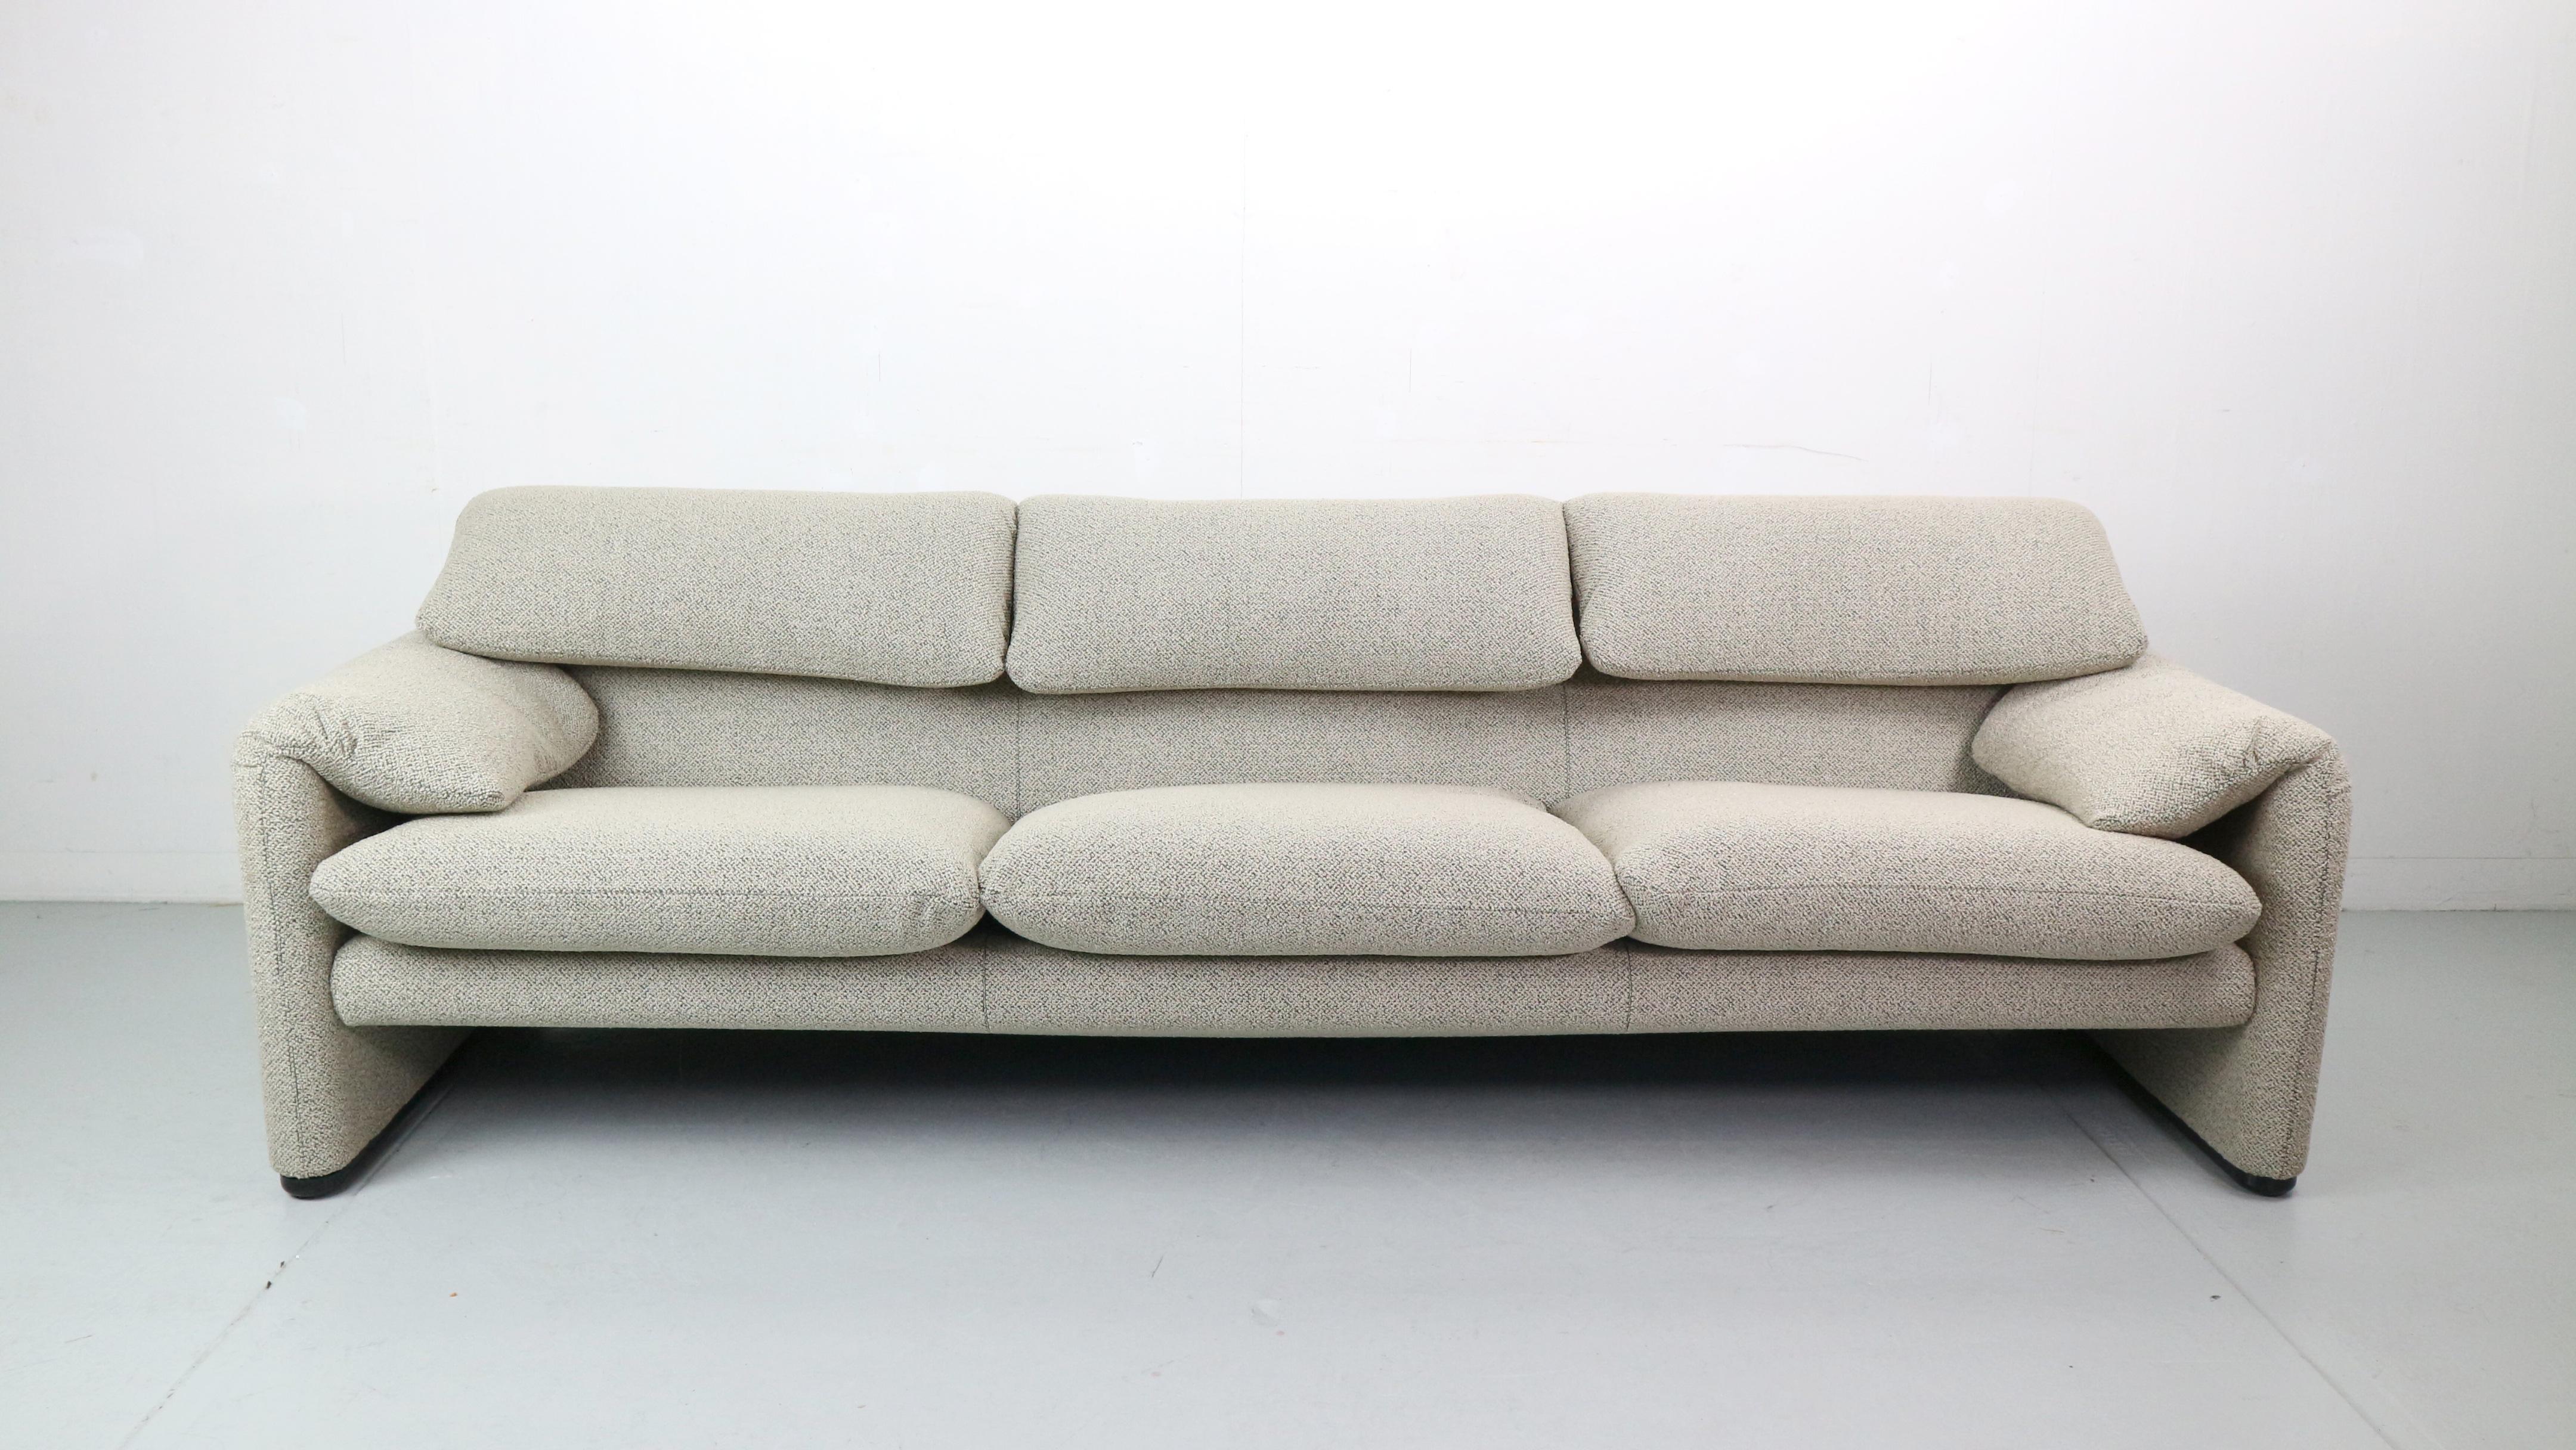 Wenn Sie den klassischen italienischen Stil suchen, sind Sie hier genau richtig!

Maralunga 3-sitziges Sofa, 1973 von Vico Magistretti für Cassina entworfen. Dieses Sofa verfügt über klappbare Rückenkissen, die nach unten oder oben geklappt werden